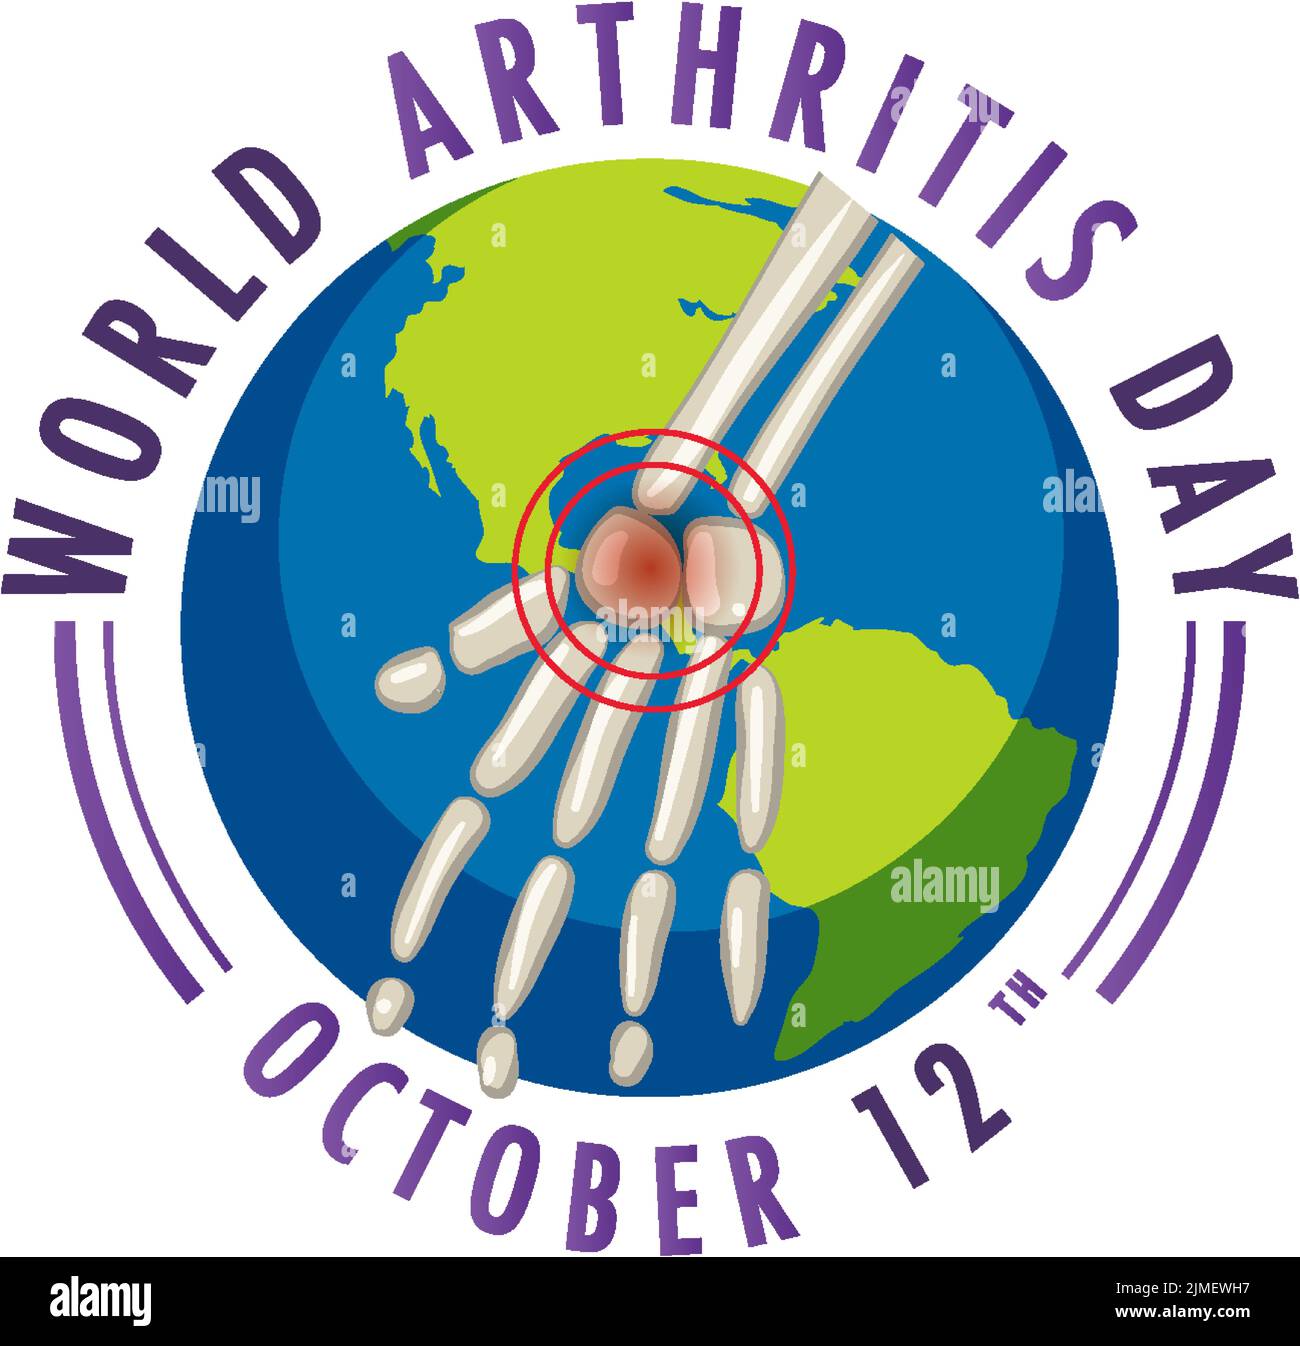 World Arthritis Day Poster Design illustration Stock Vector Image & Art